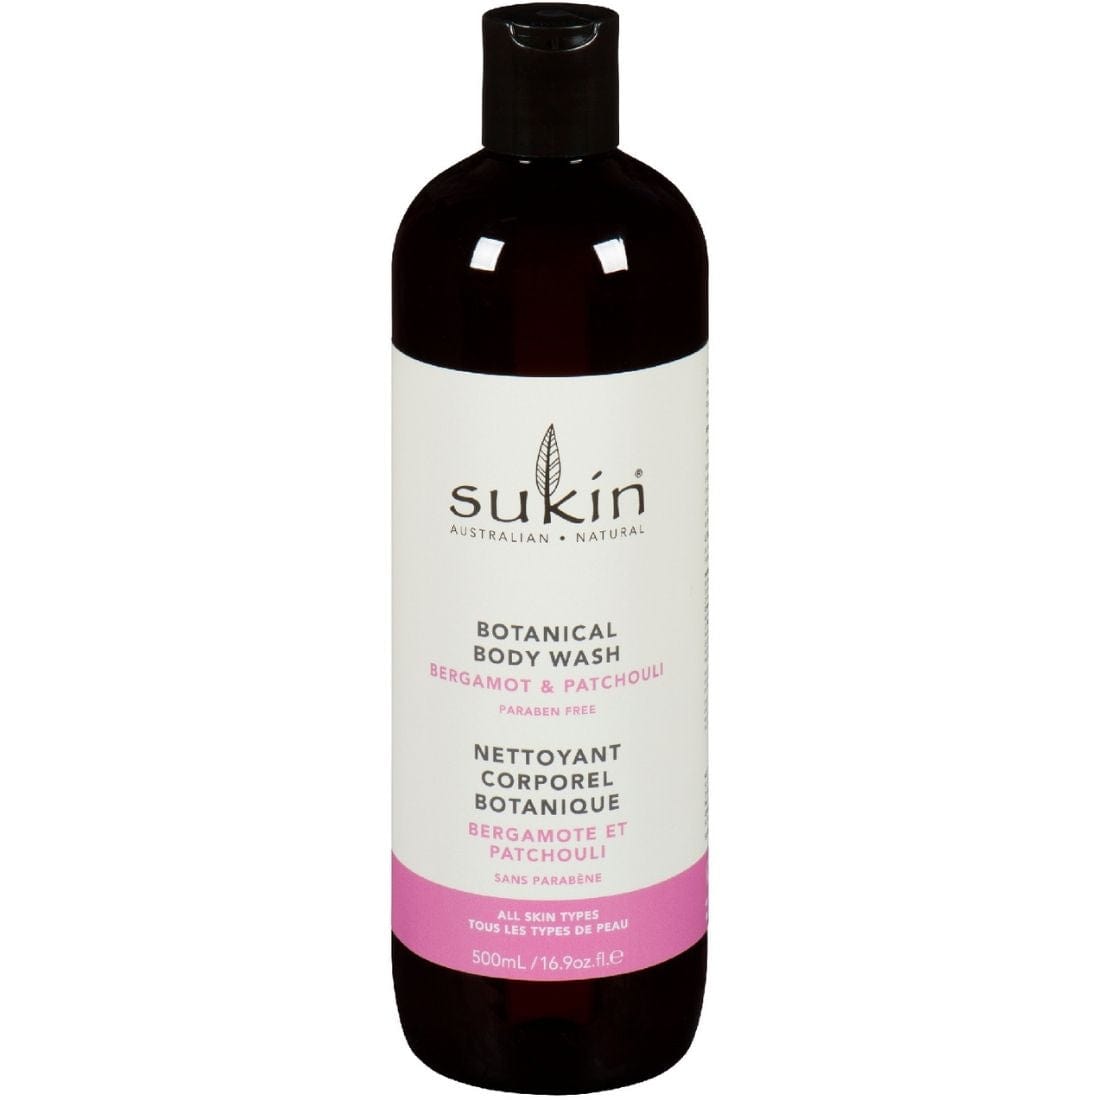 Sukin Botanical Body Wash, Clearance 40% Off, Final Sale